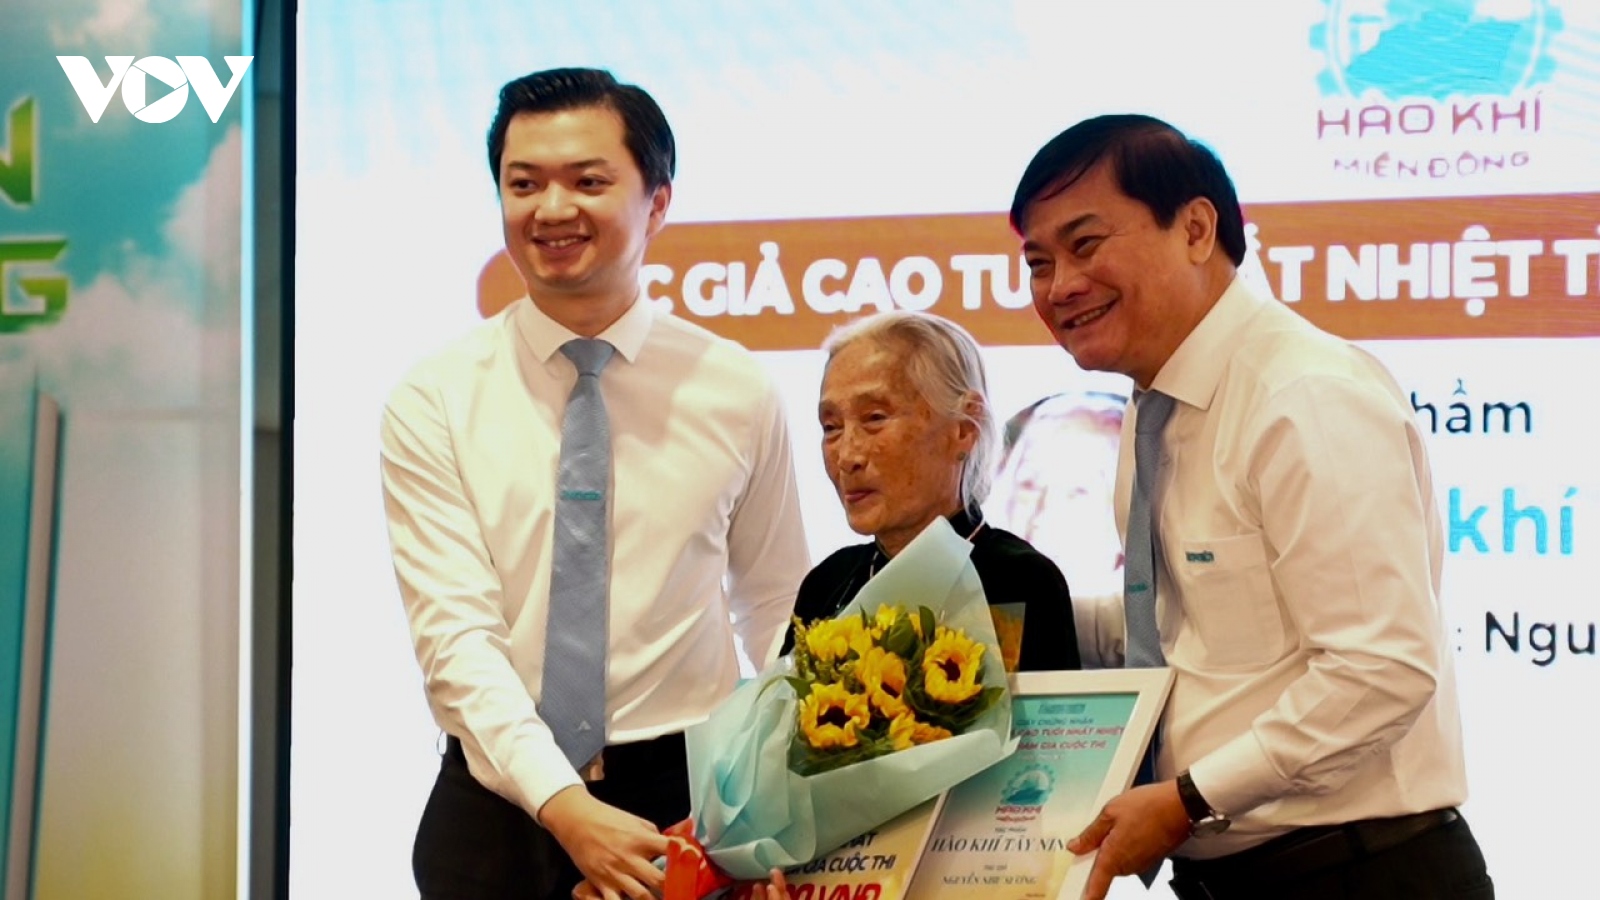 Cụ bà 92 tuổi ở Tây Ninh giành giải tại cuộc thi "Hào khí miền Đông"